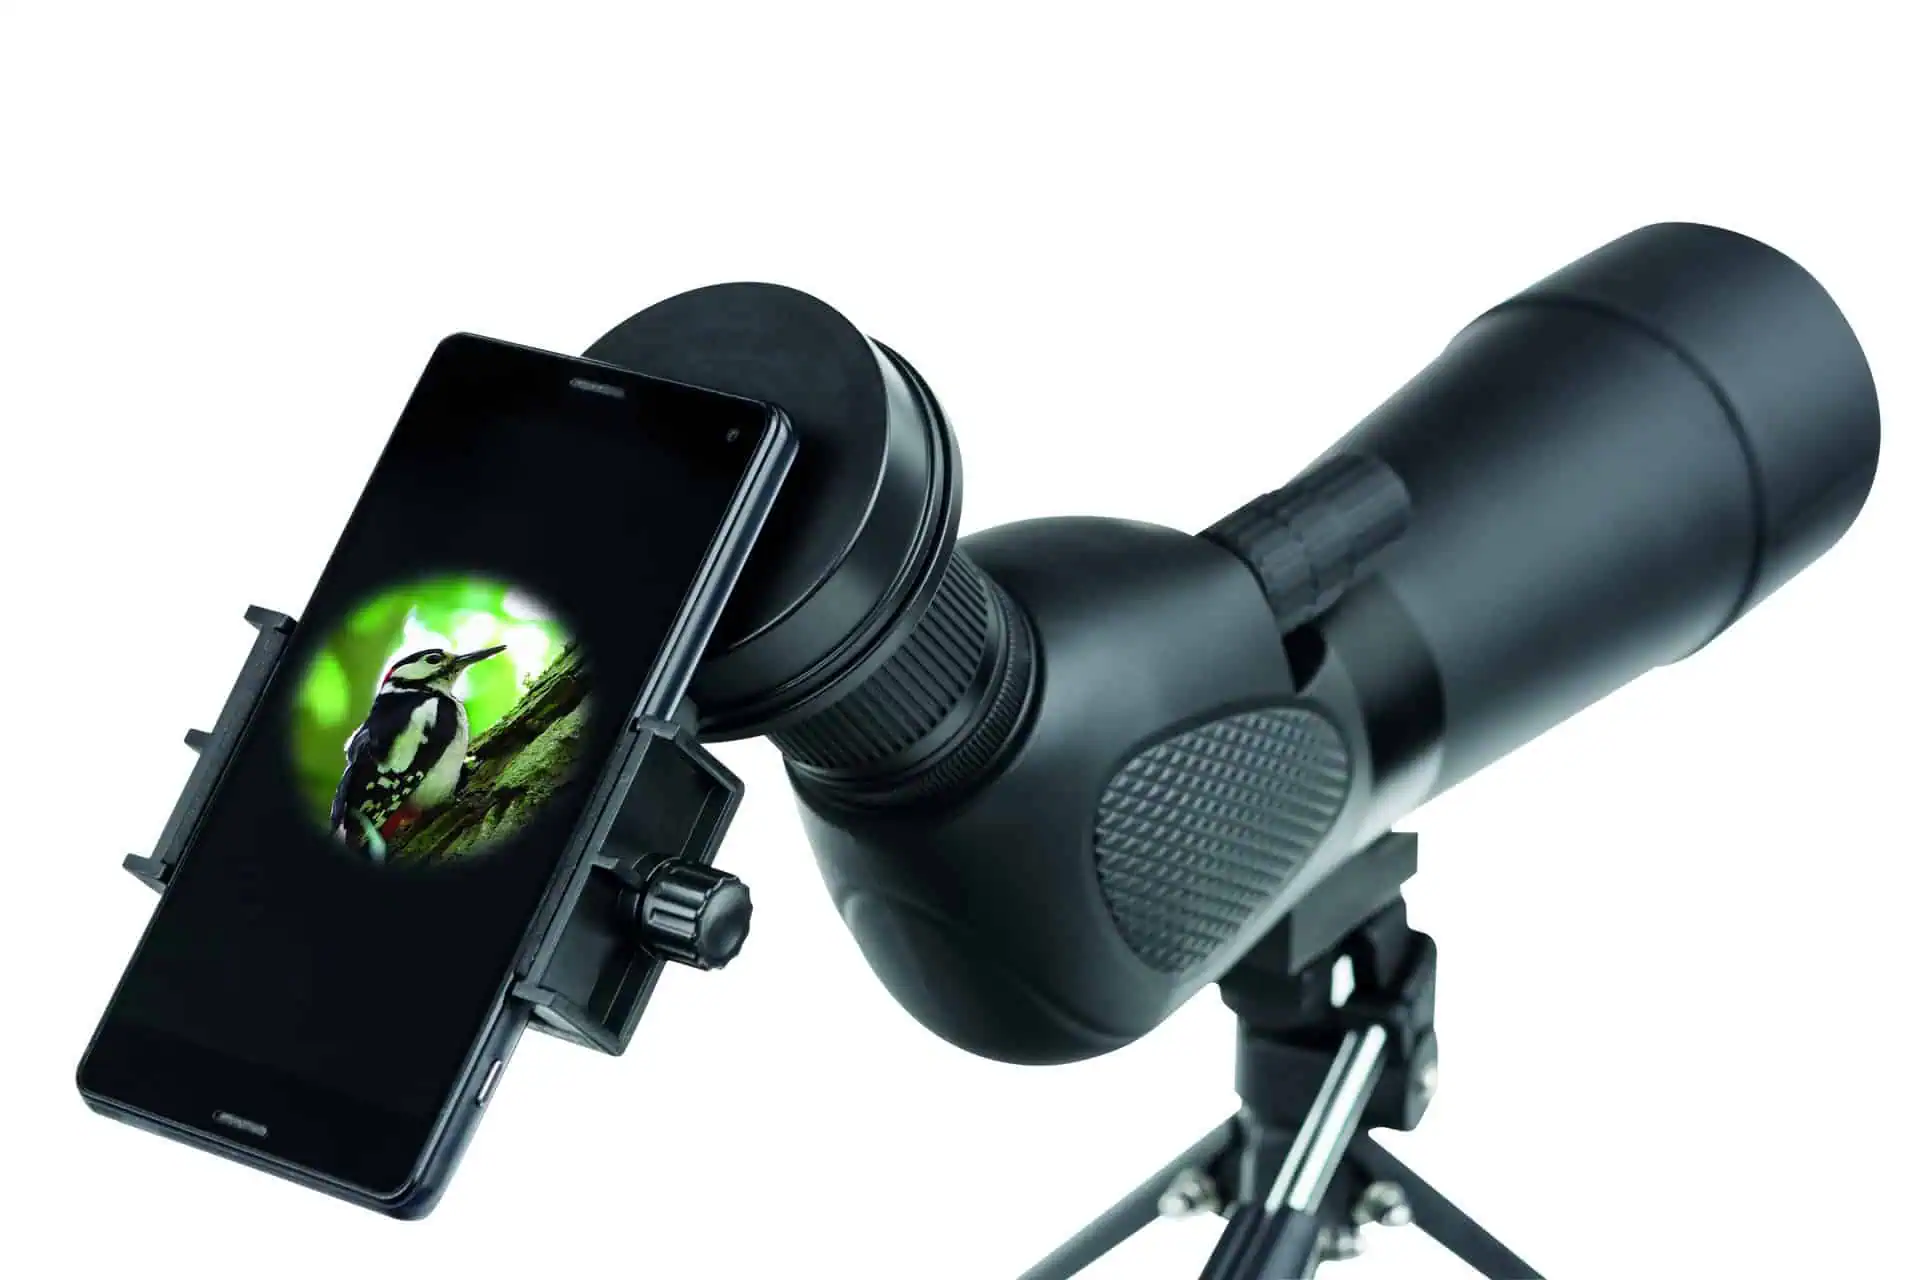 Adattatore fotografico universale per smartphone SA-1 per cannocchiali